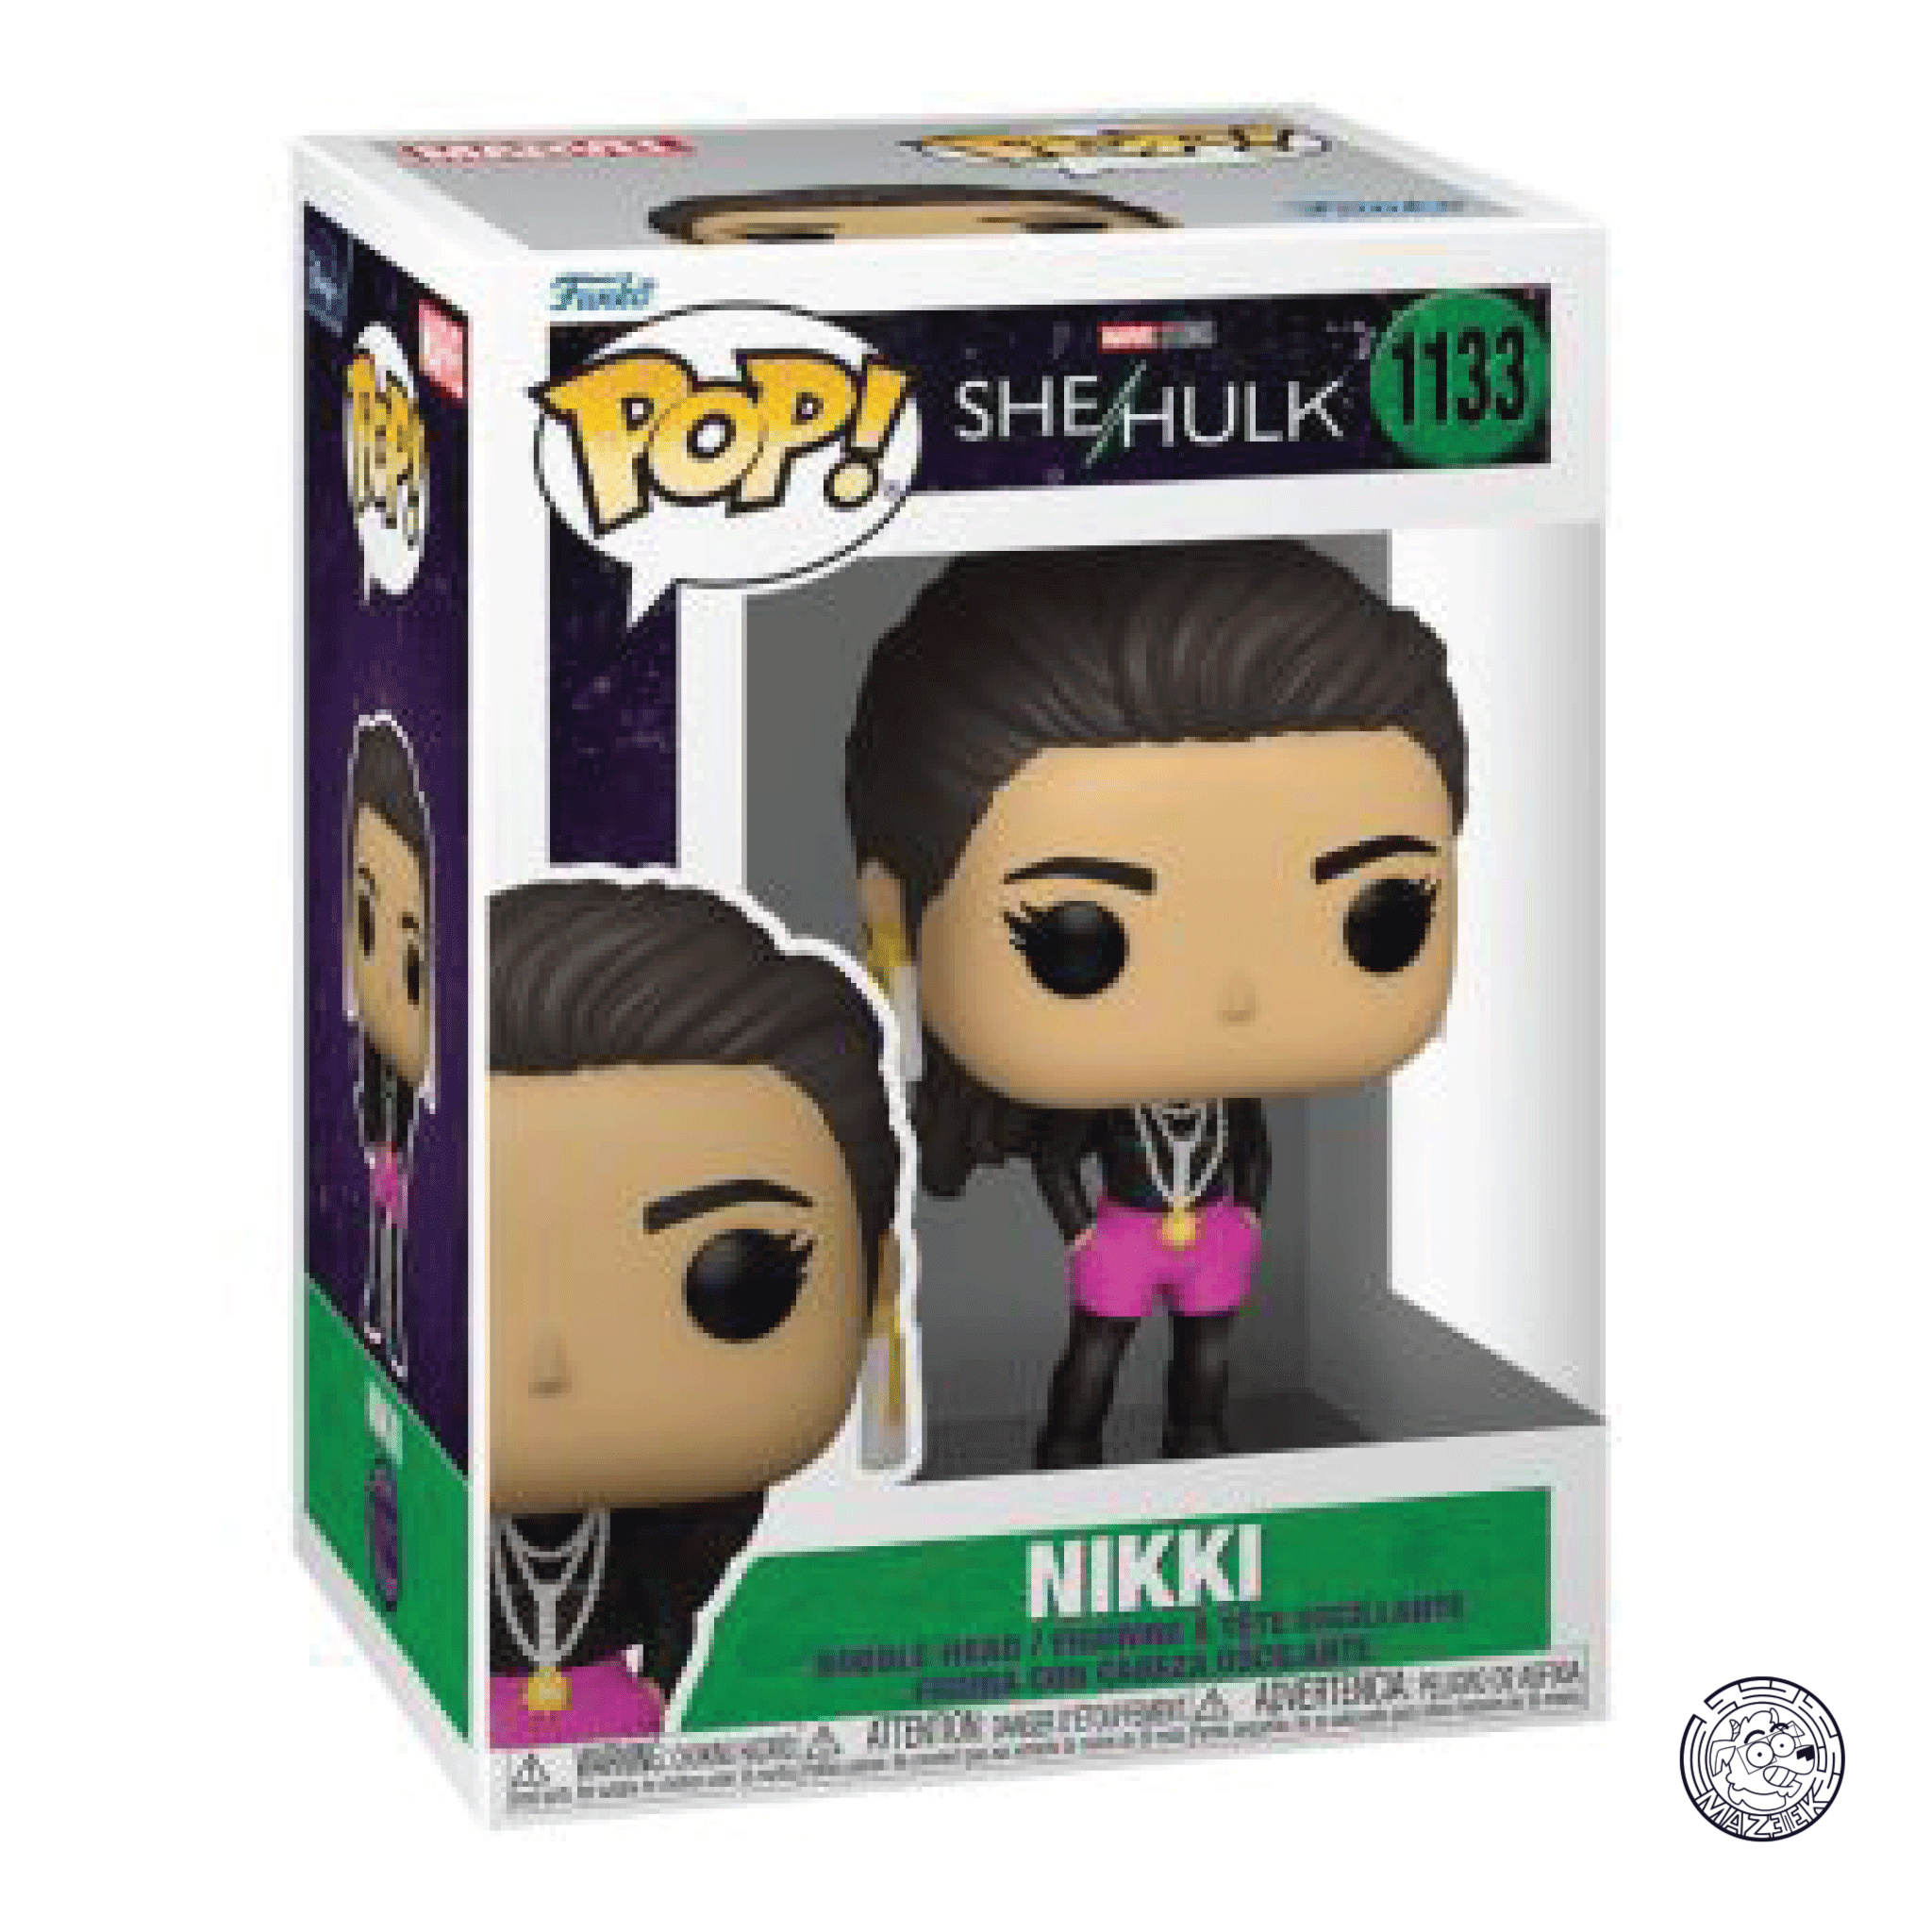 Funko POP! She Hulk: Nikki 1133